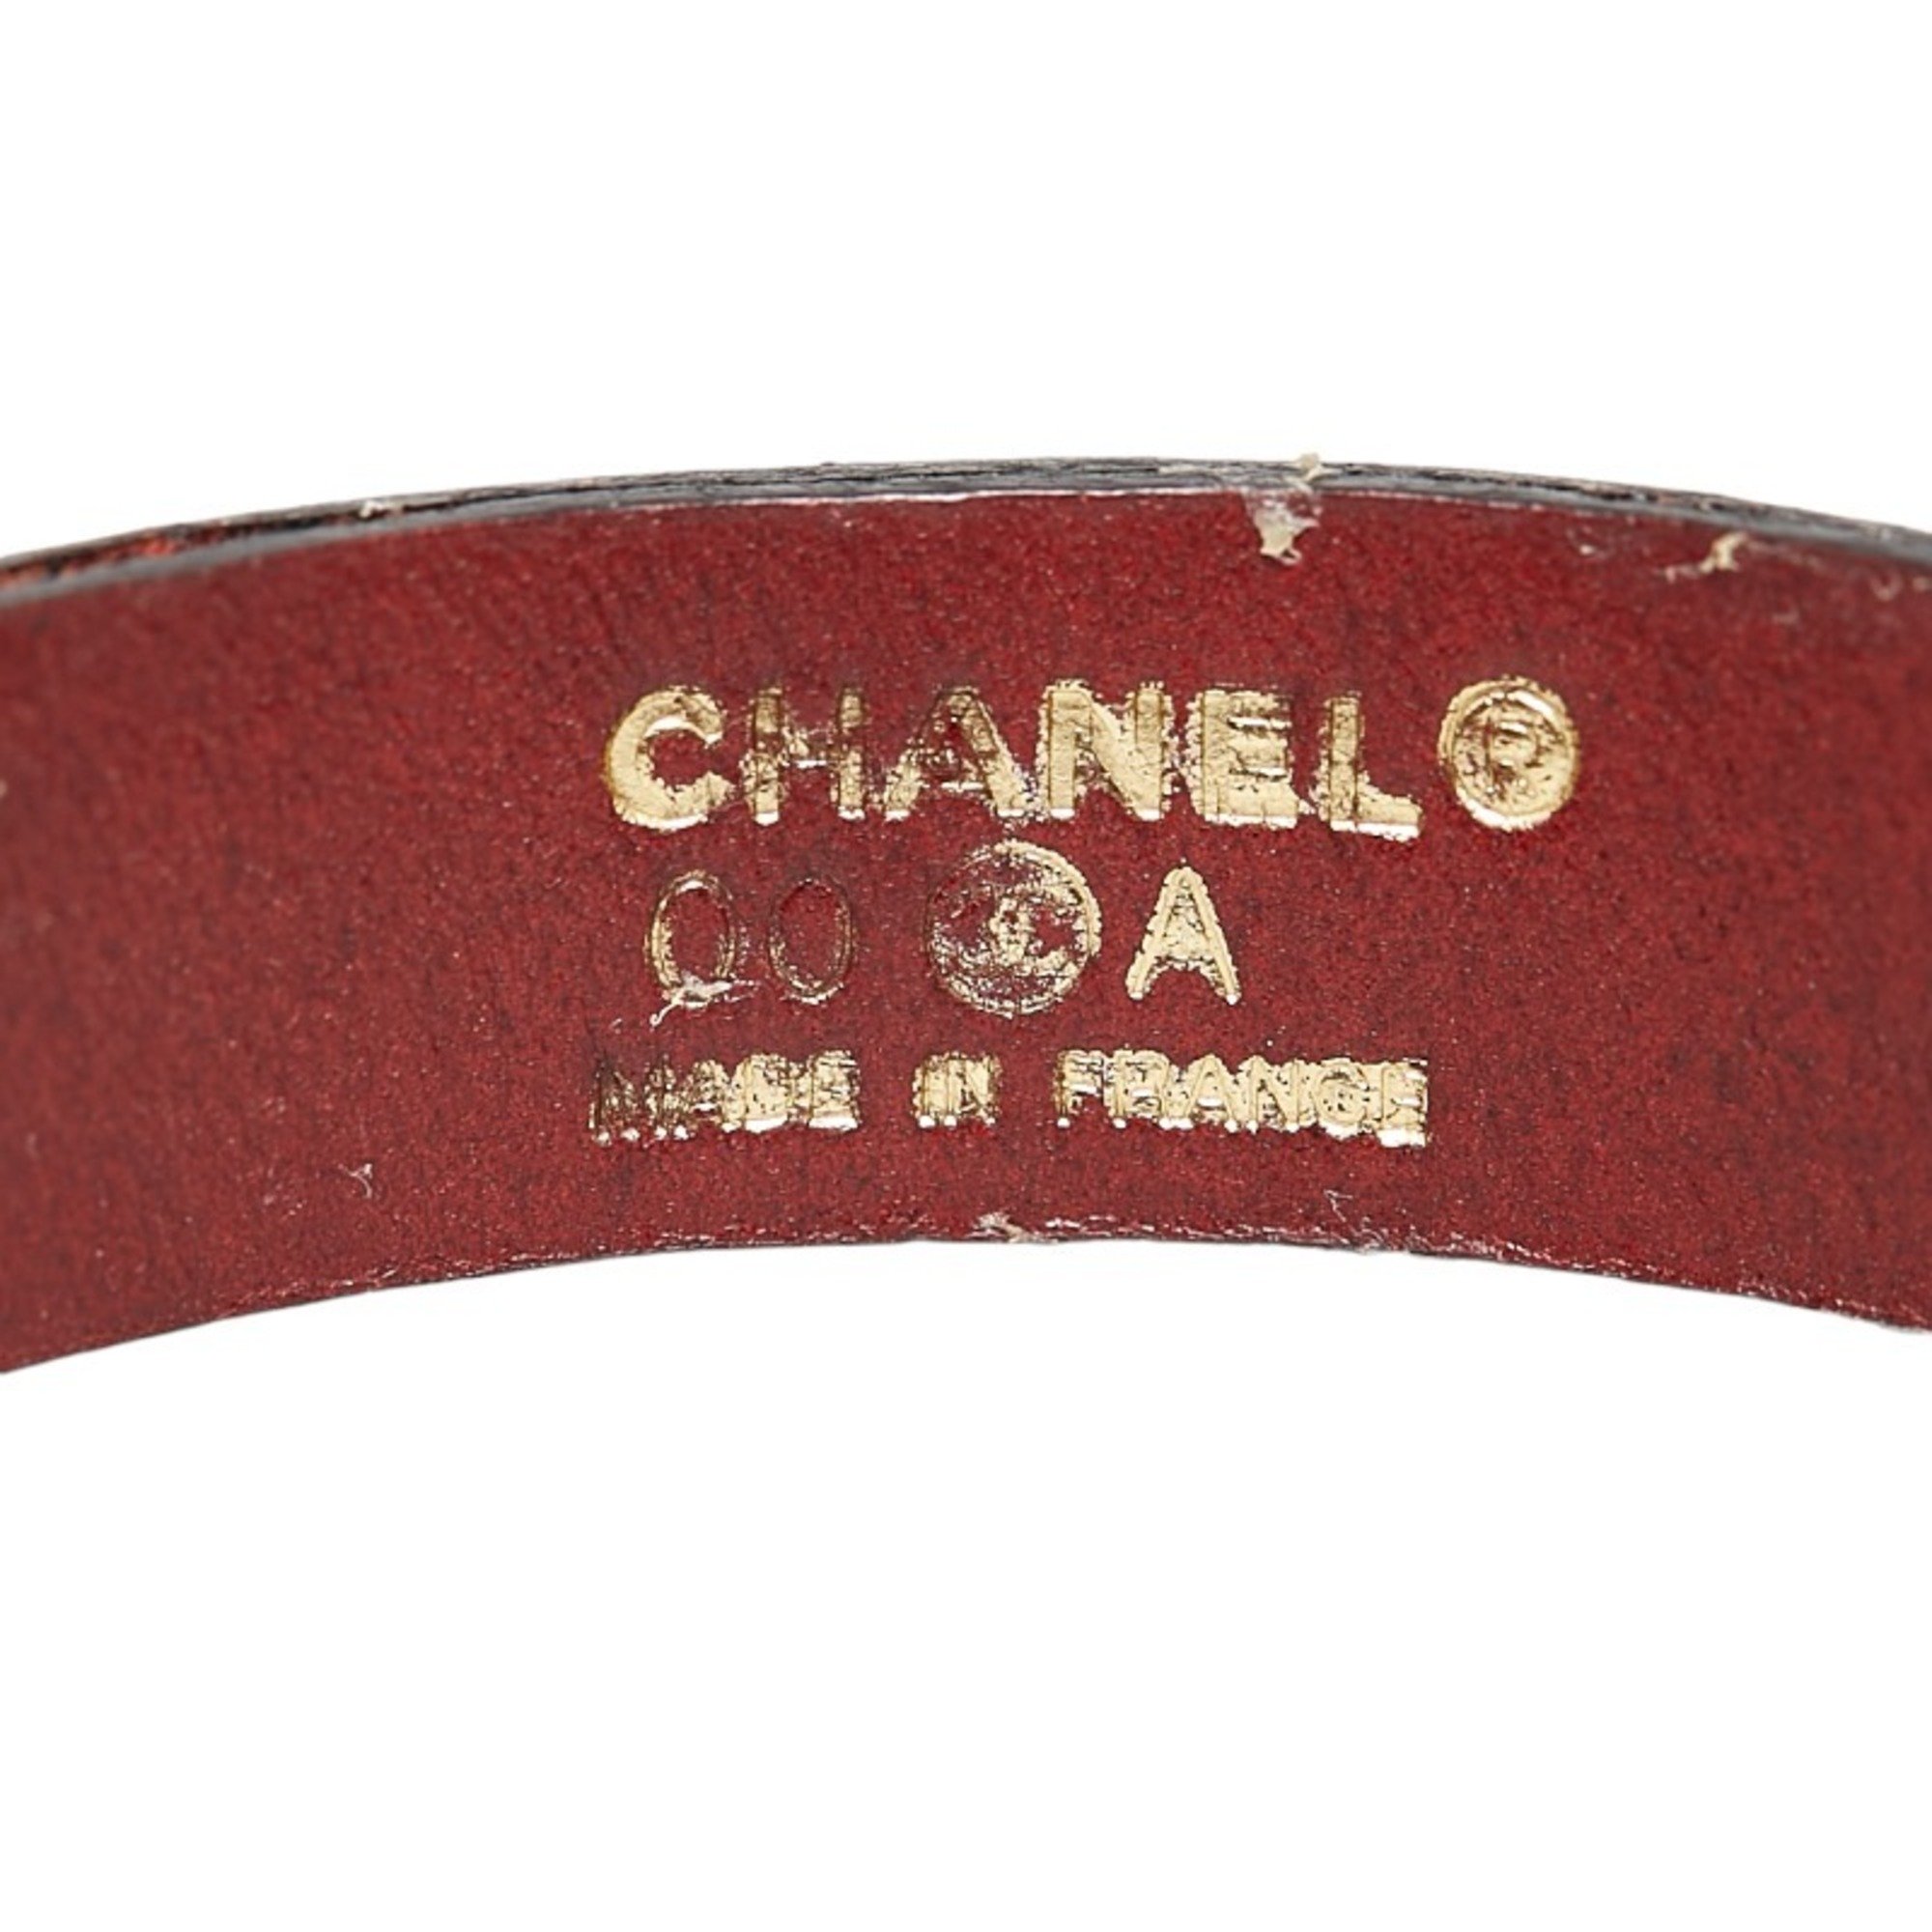 CHANEL plate bangle bracelet dark brown leather metal ladies